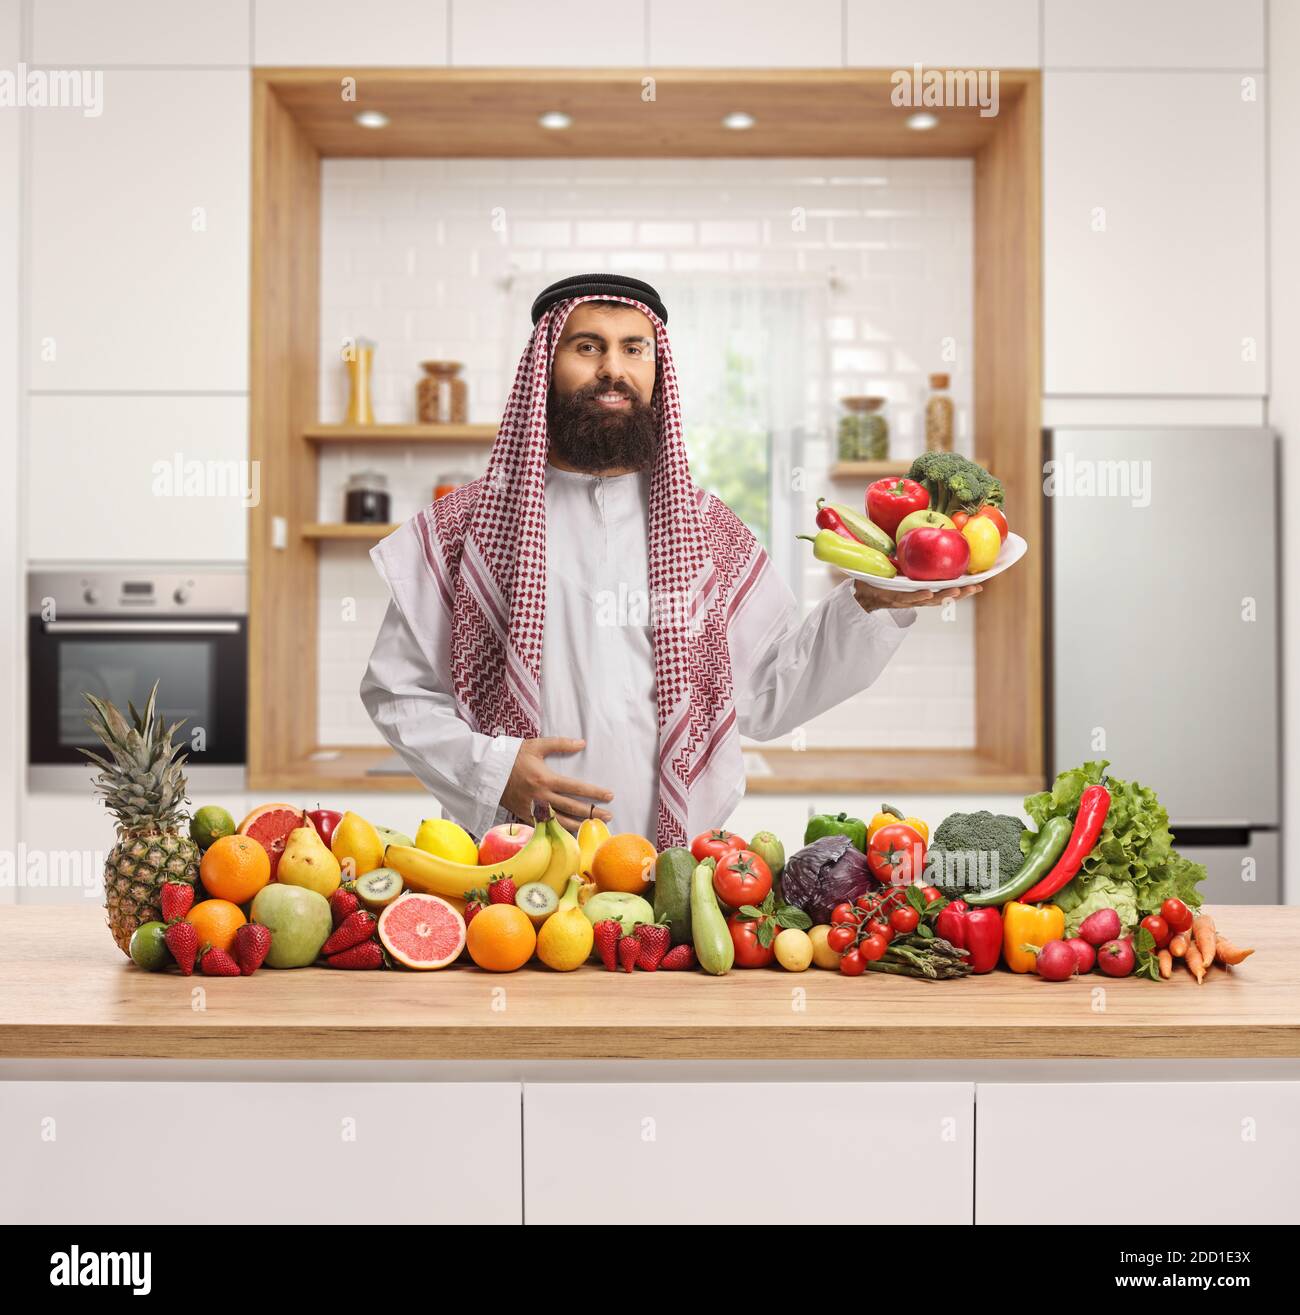 Traditioneller saudi-arabischer Mann in einer Küche, der einen Teller hält Von Obst und Gemüse und stehen hinter einem Haufen von Obst und Gemüse Stockfoto